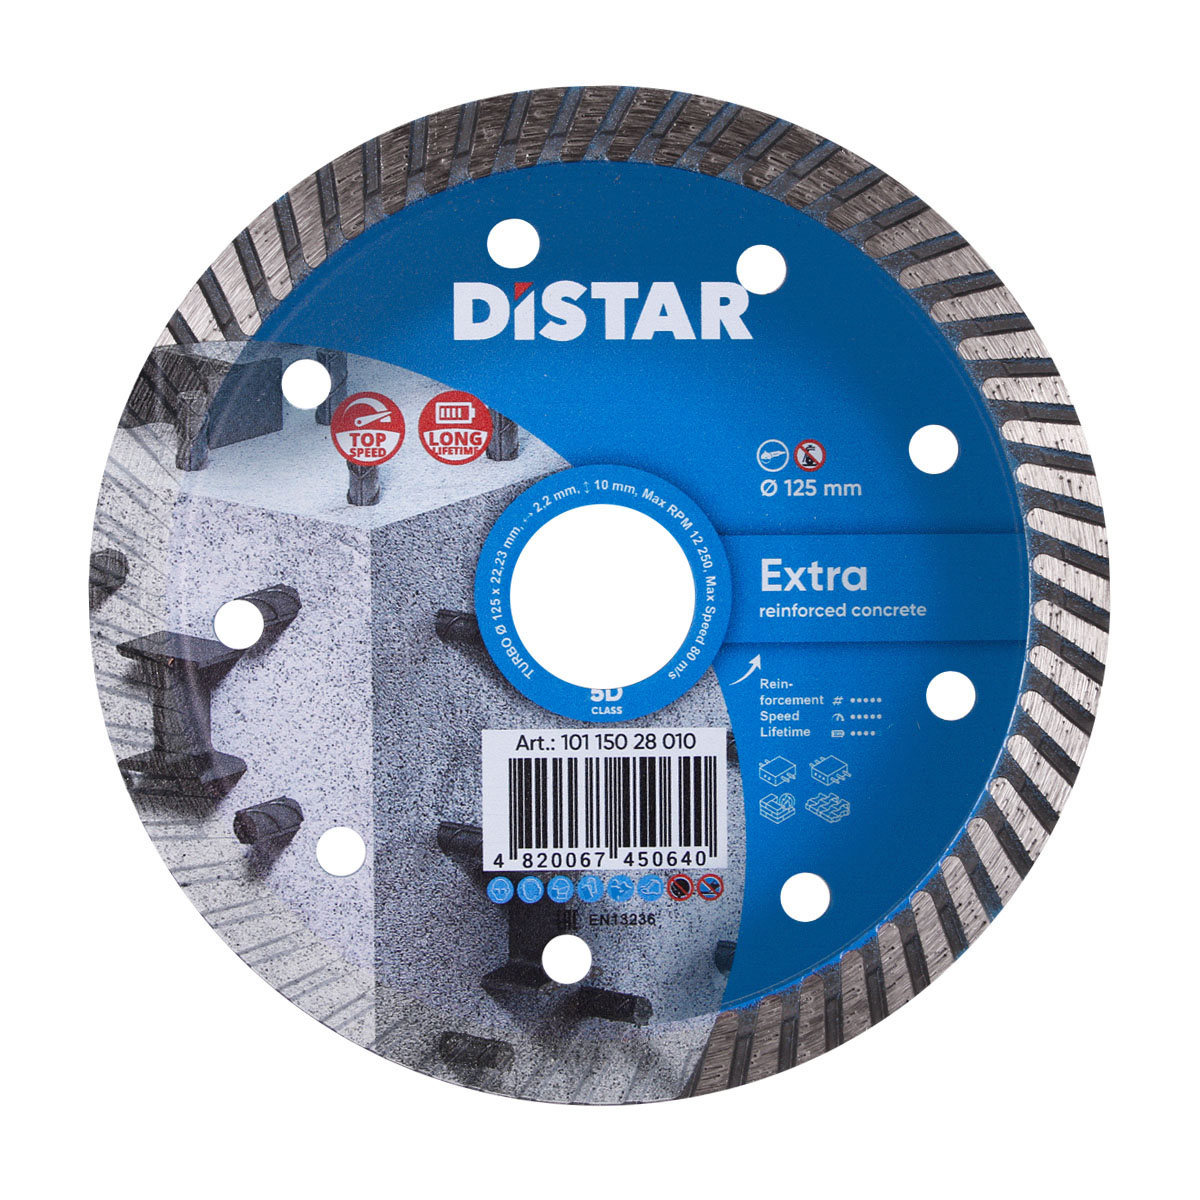 Диск алмазный отрезной по бетону для УШМ Distar 1A1R Turbo 125 мм Extra 5D диск алмазный отрезной по свежему бетону и асфальту distar 1a1rss c3 h 230 мм stayer